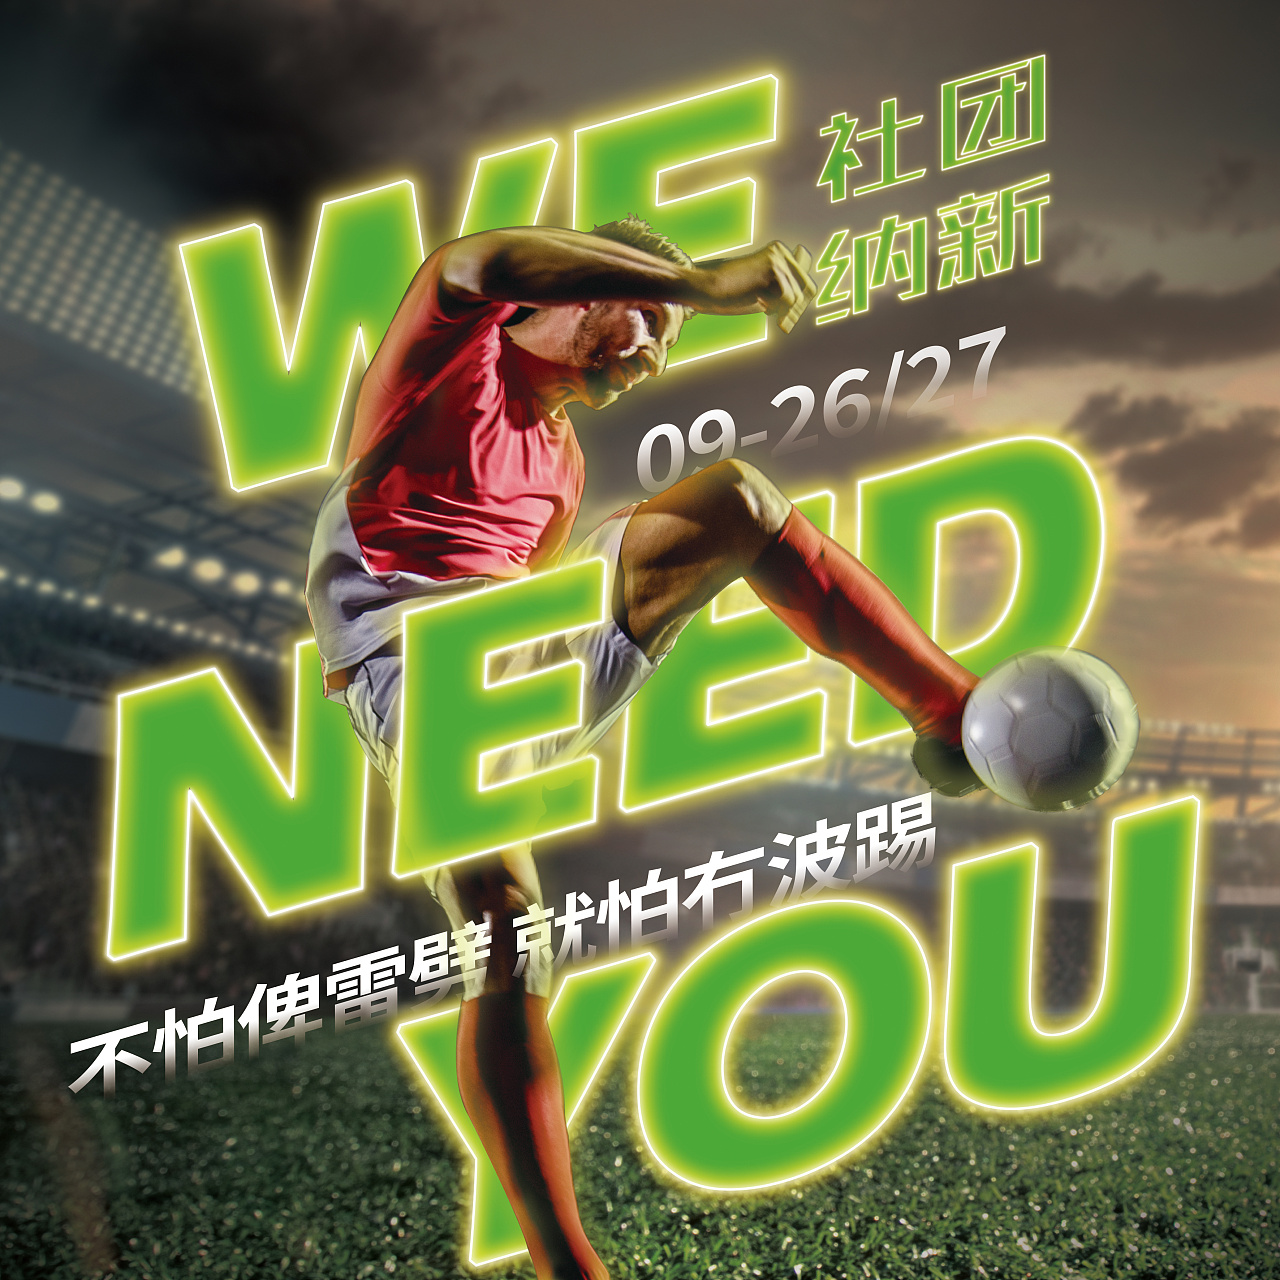 2019足球友谊赛巅峰对决足球比赛海报设计图片下载 - 觅知网